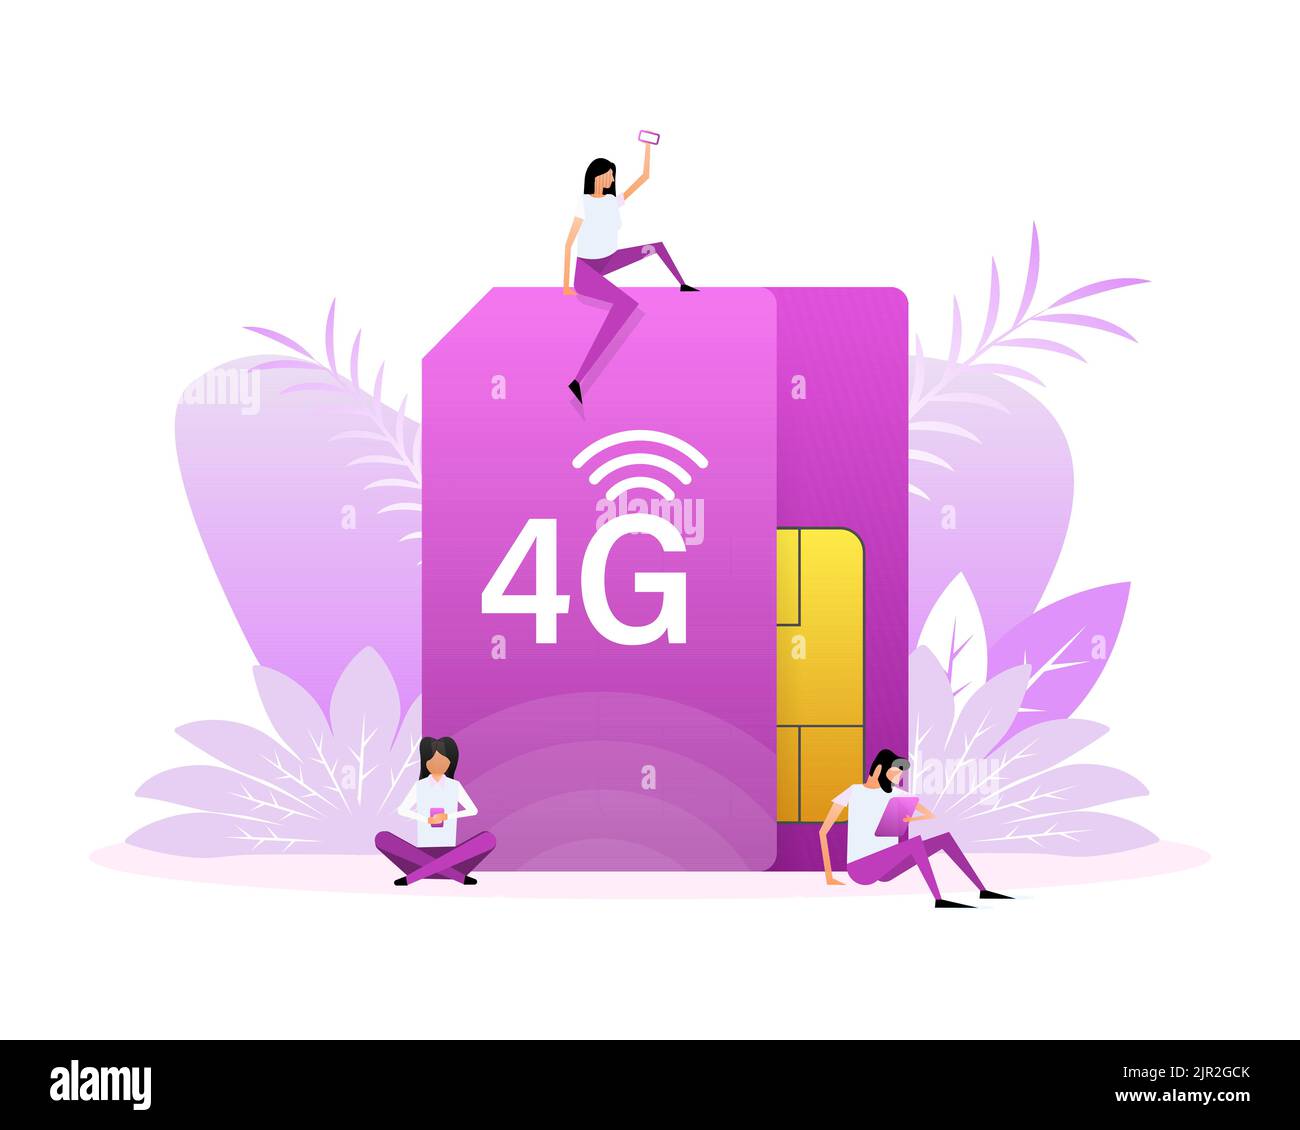 4G SIM-Karte. 4G Technologiehintergrund. Flache Schriftzeichen Stock Vektor